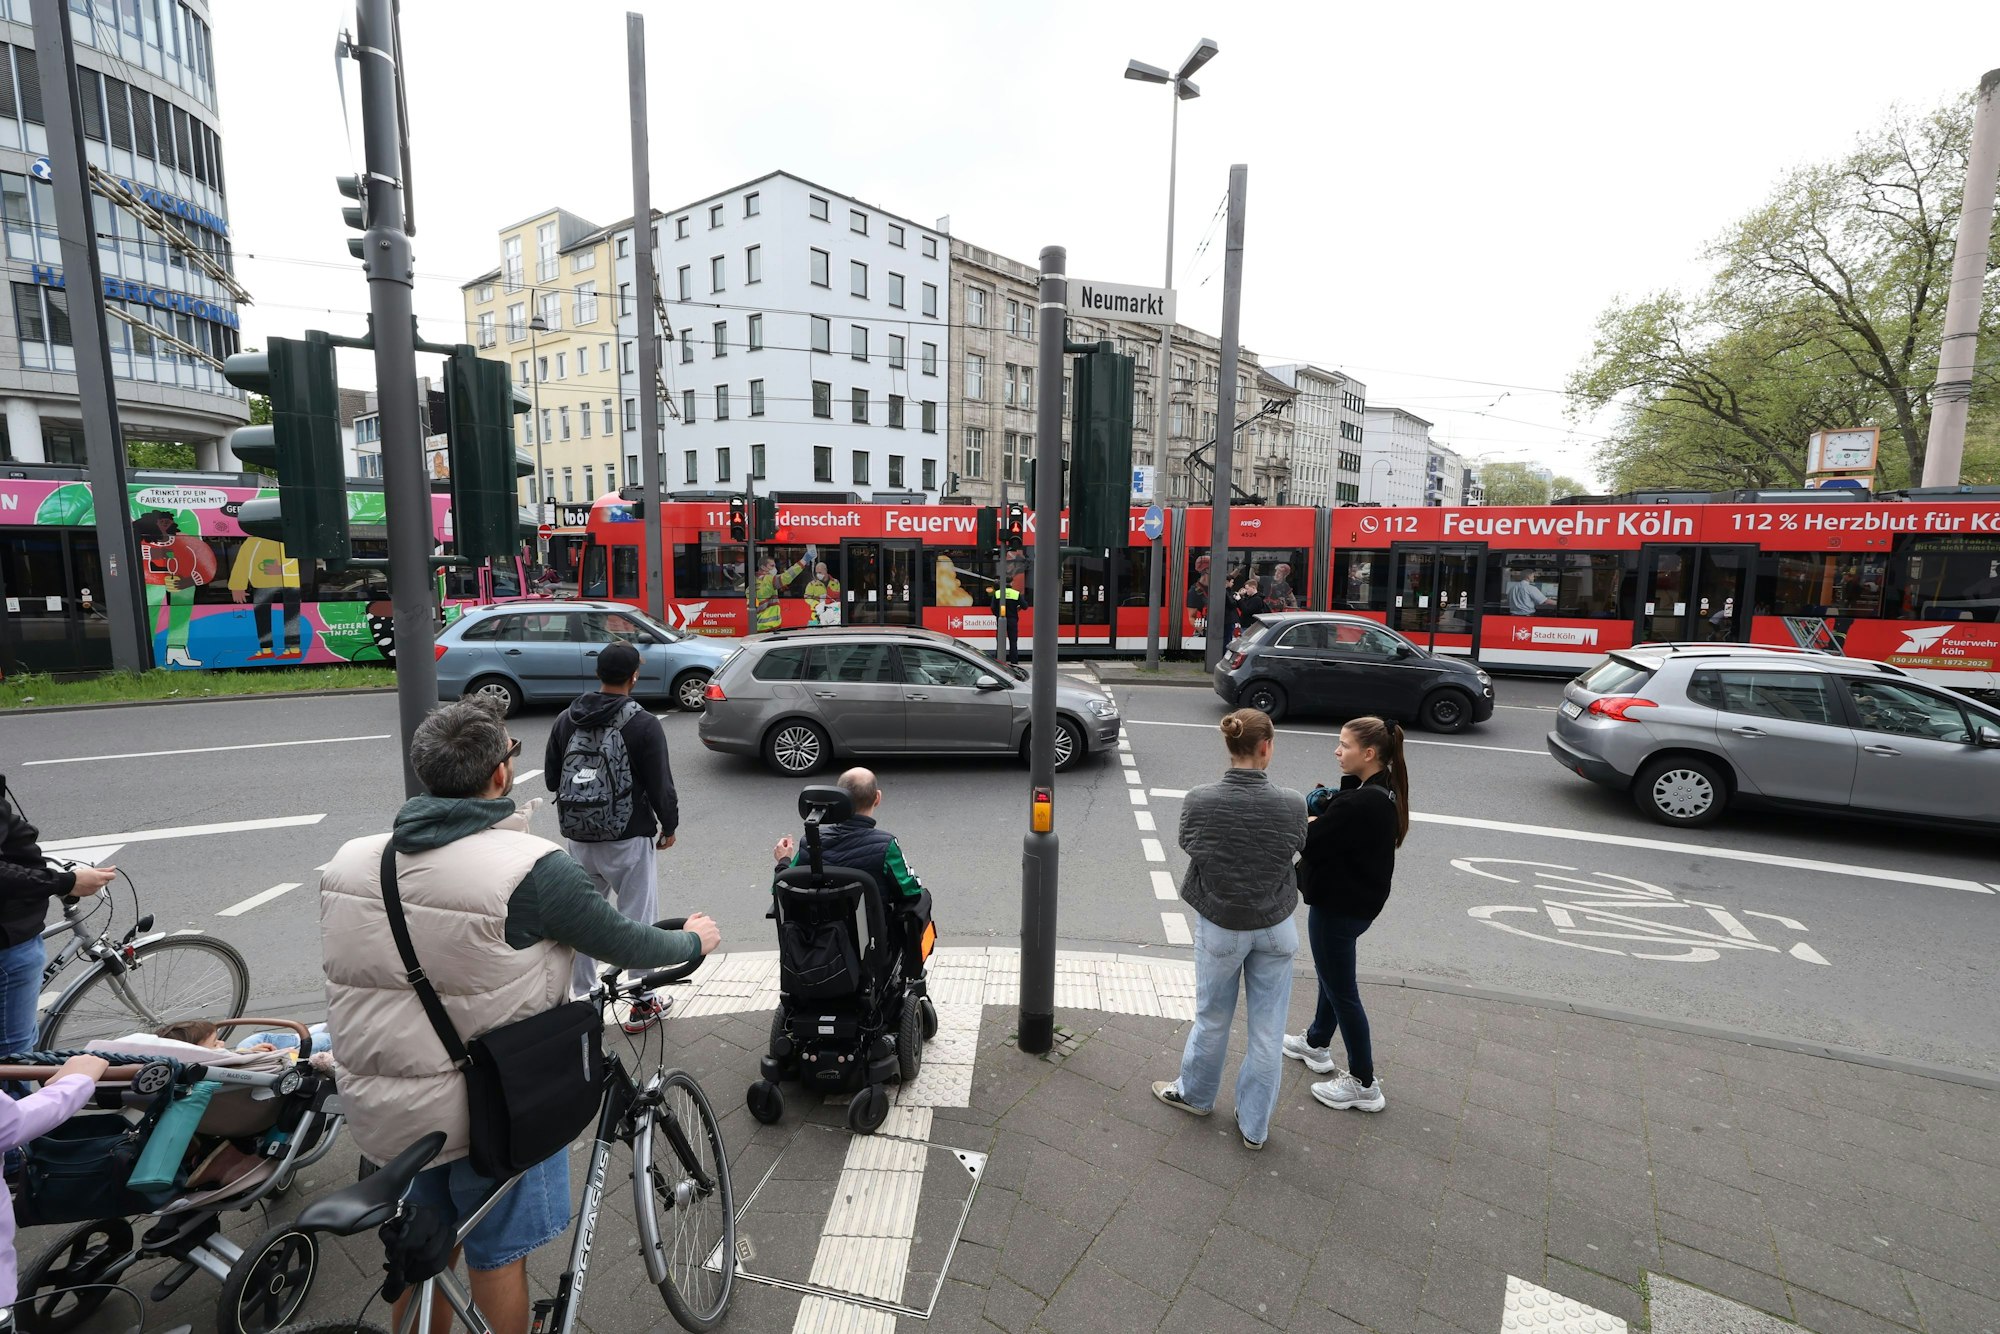 Fußgänger und Radfahrende warten an einer Ampel am Kölner Neumarkt darauf, dass sie die Straße überqueren können. Es sind Autos zu sehen und eine lange Straßenbahn.